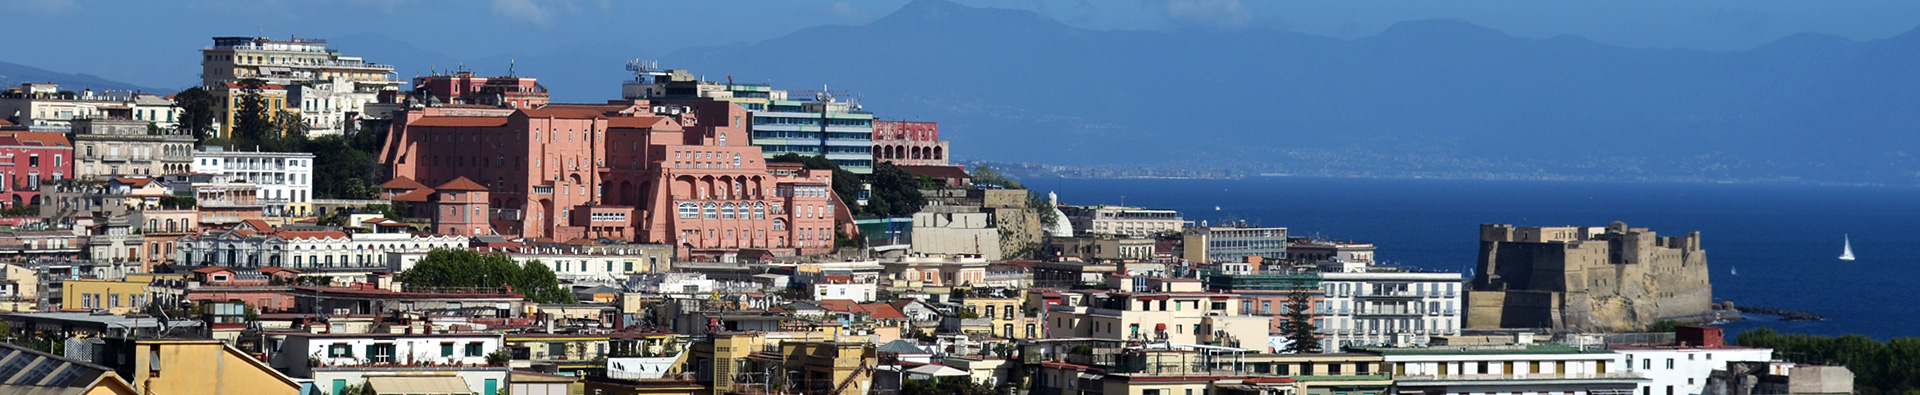 Una veduta della città di Napoli